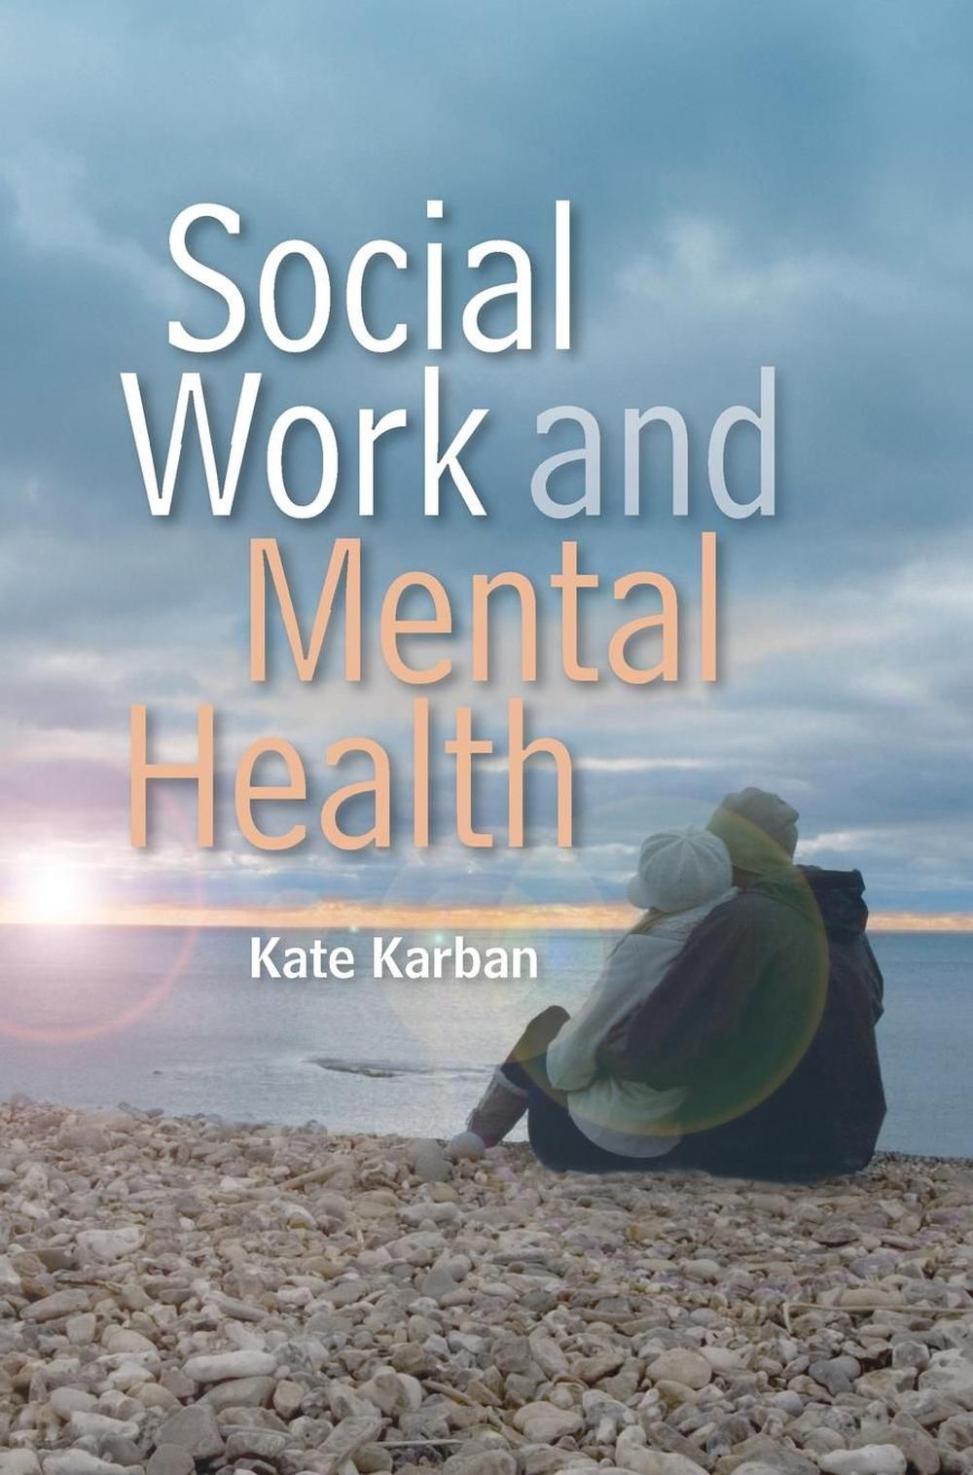 Hvordan kan sosialarbeidere bruke bokanmeldelser til å fremme sosial endring og øke bevisstheten om viktige problemstillinger?